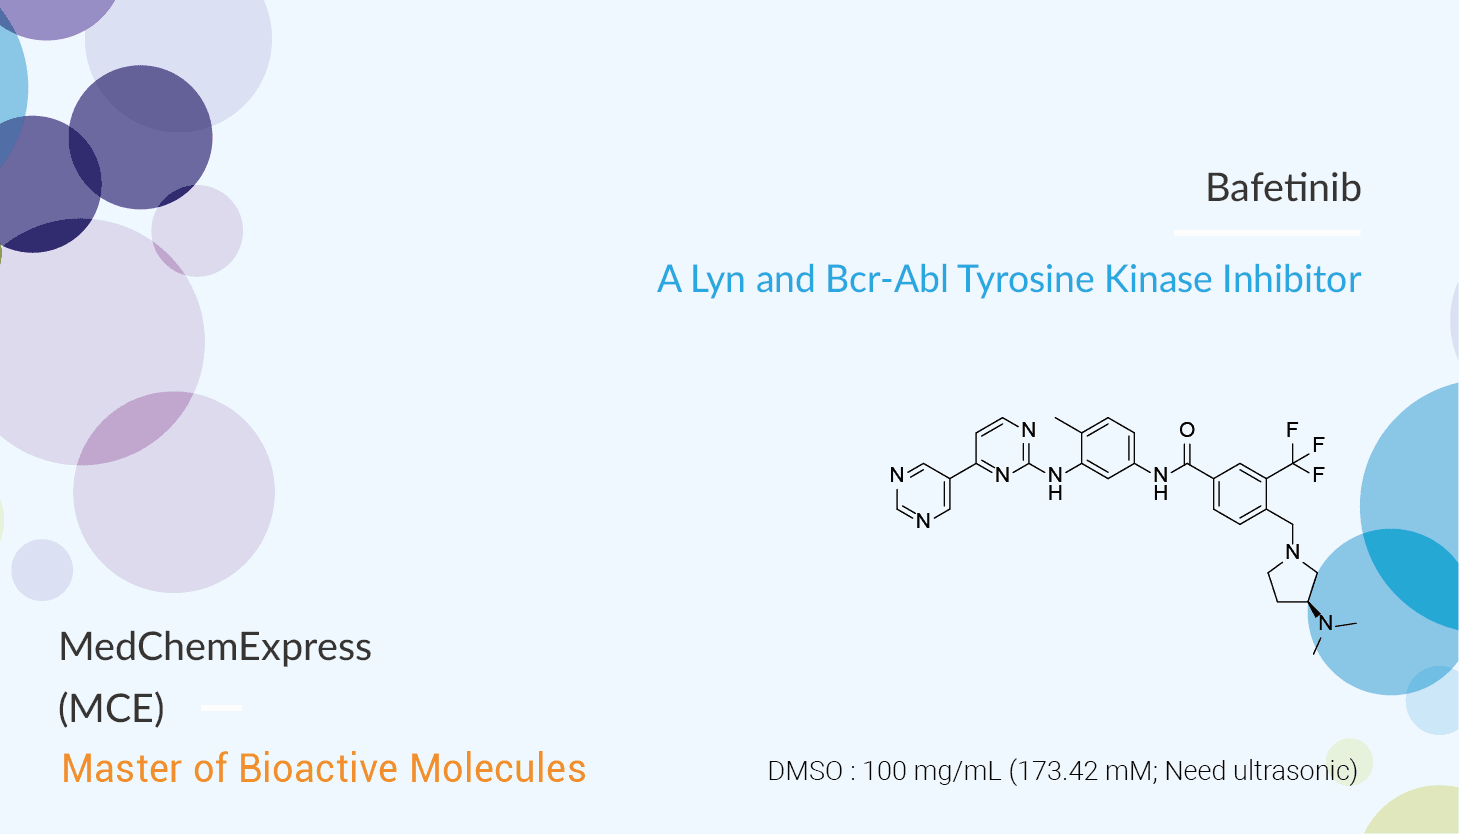 Bafetinib - Bafetinib is a Lyn and Bcr-Abl Tyrosine Kinase Inhibitor